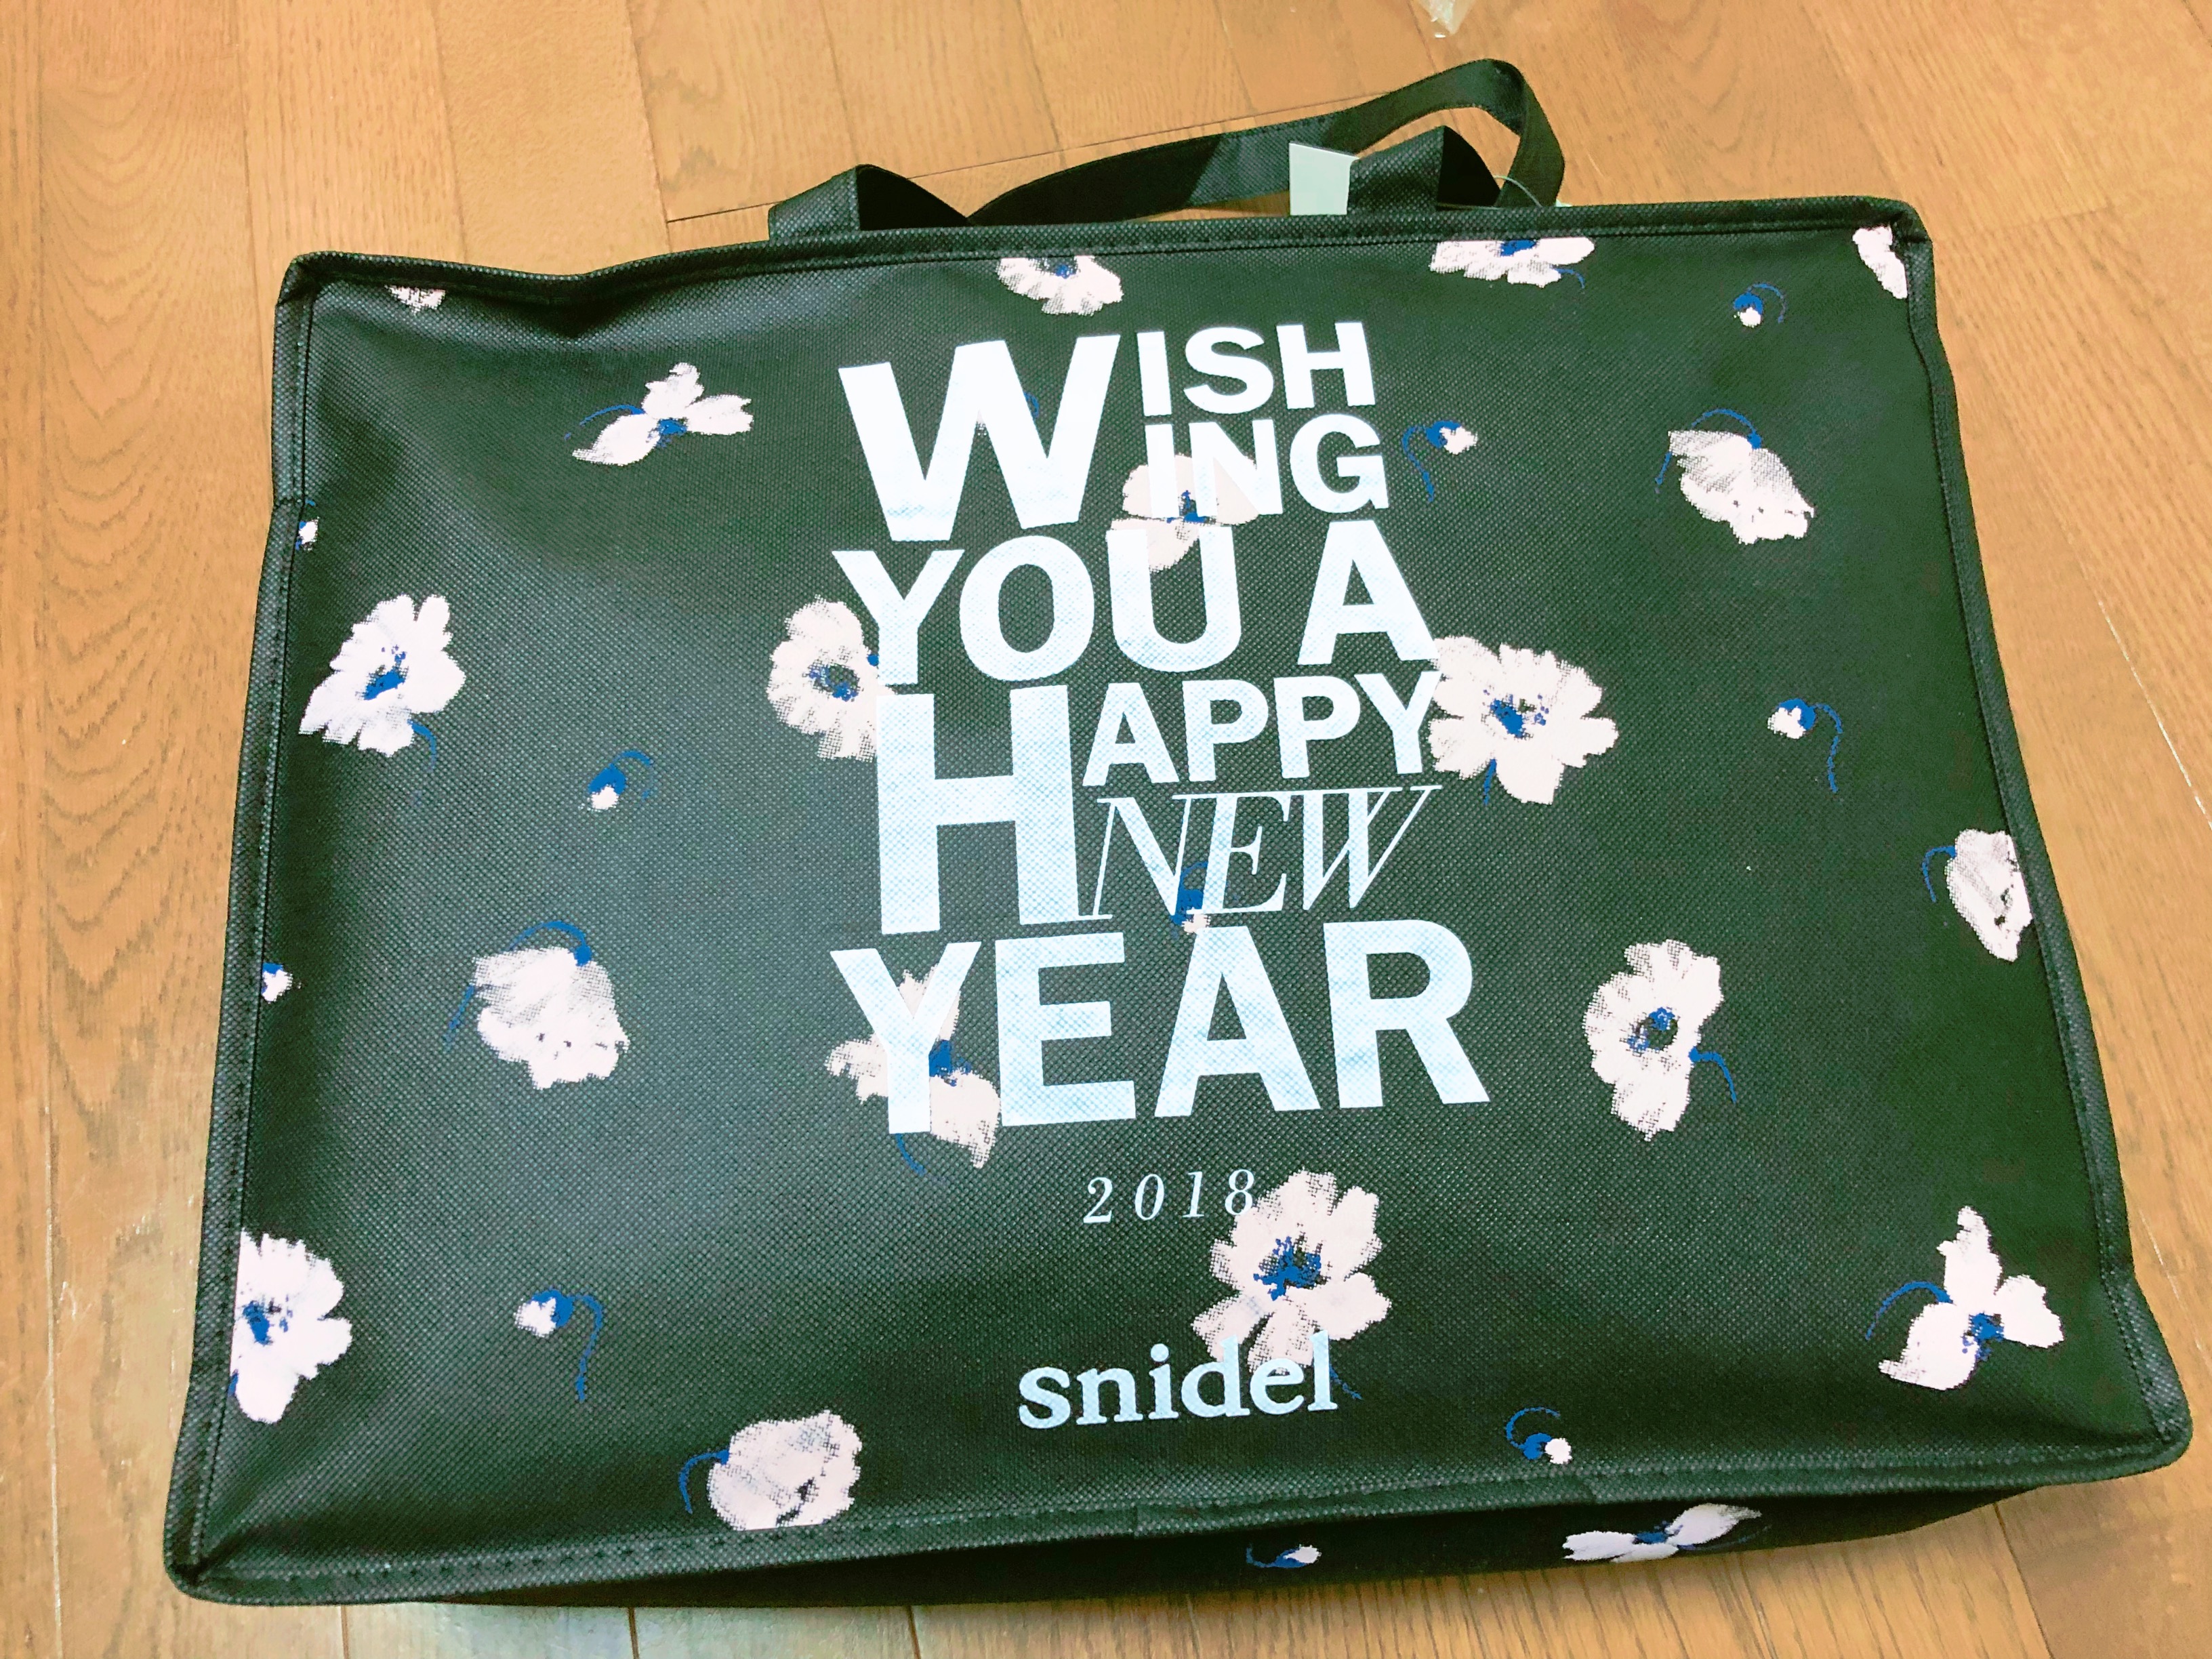 【2019情報あり】2018年snidel福袋を購入しました【中身ネタバレ 